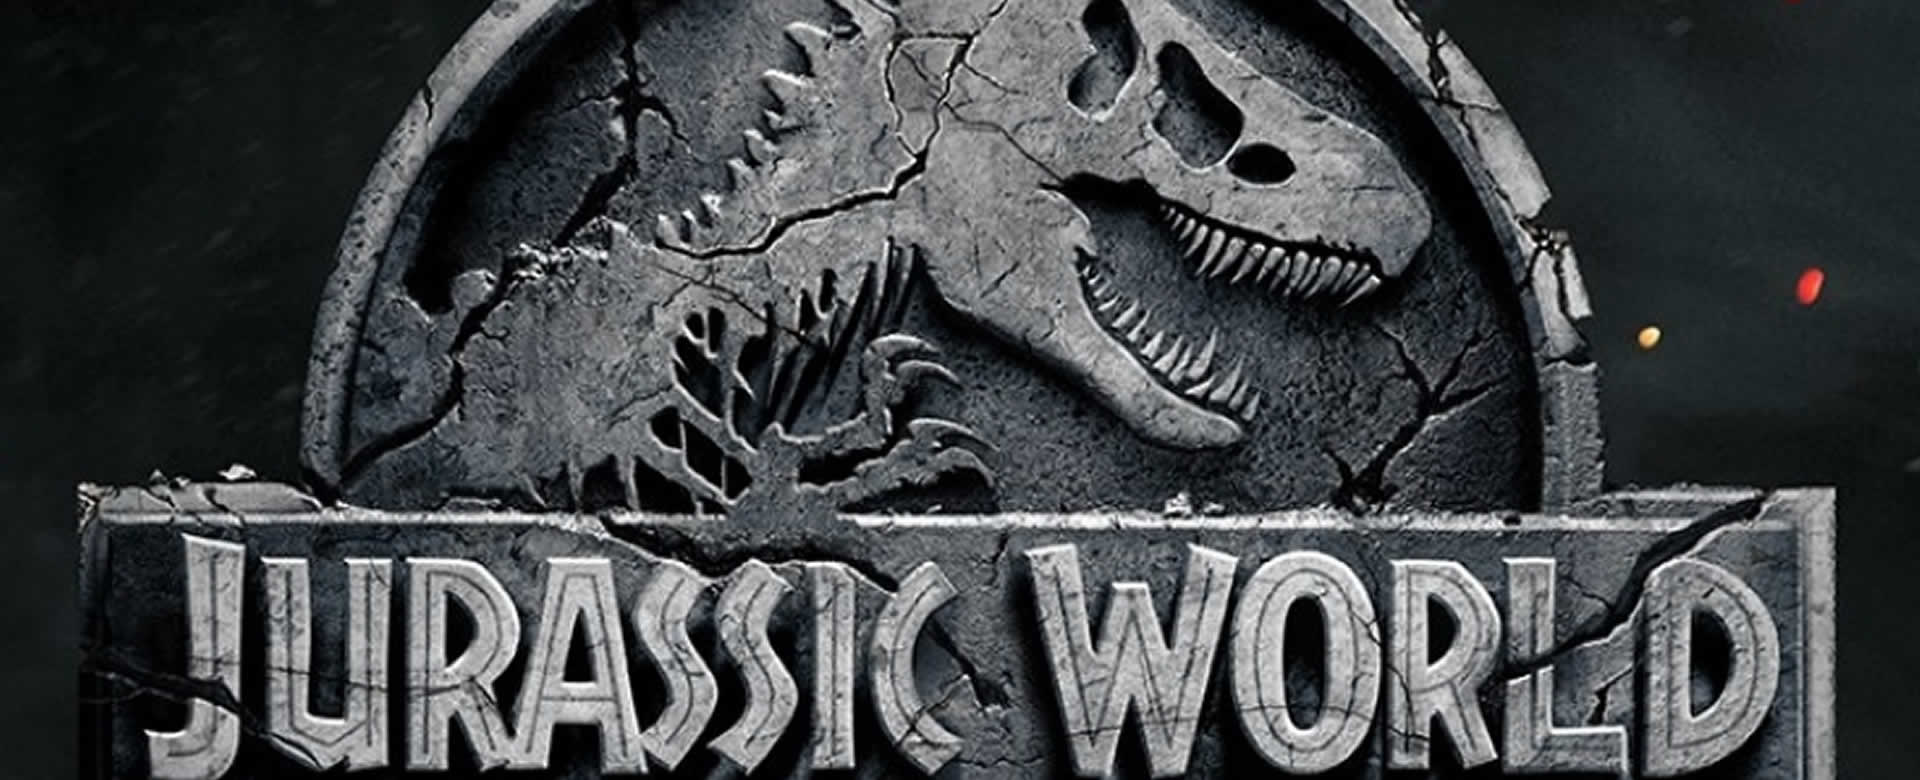 Revelan avance de "Jurassic World 2"